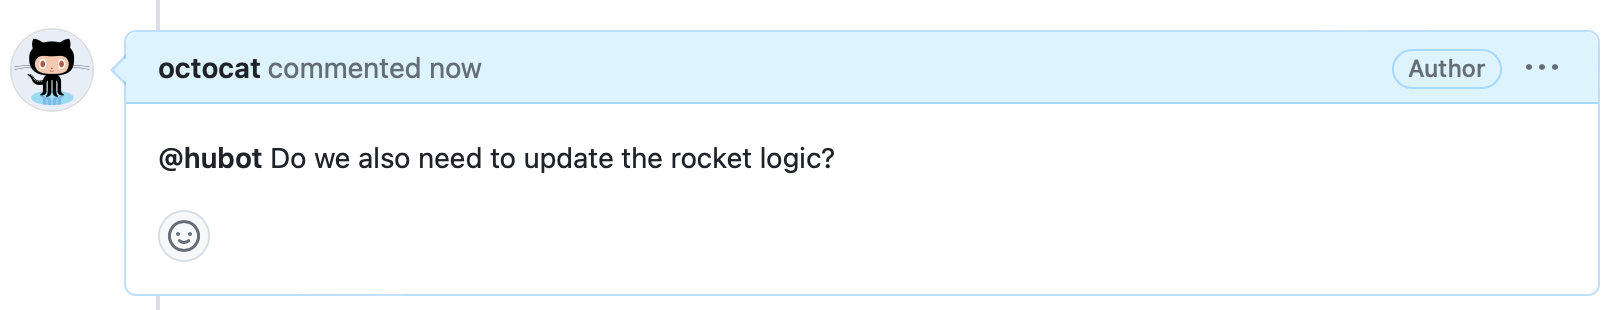 问题注释的屏幕截图。 标题显示“octocat 现在评论”，正文显示“@hubot 我们还需要更新 Rocket 逻辑吗？”